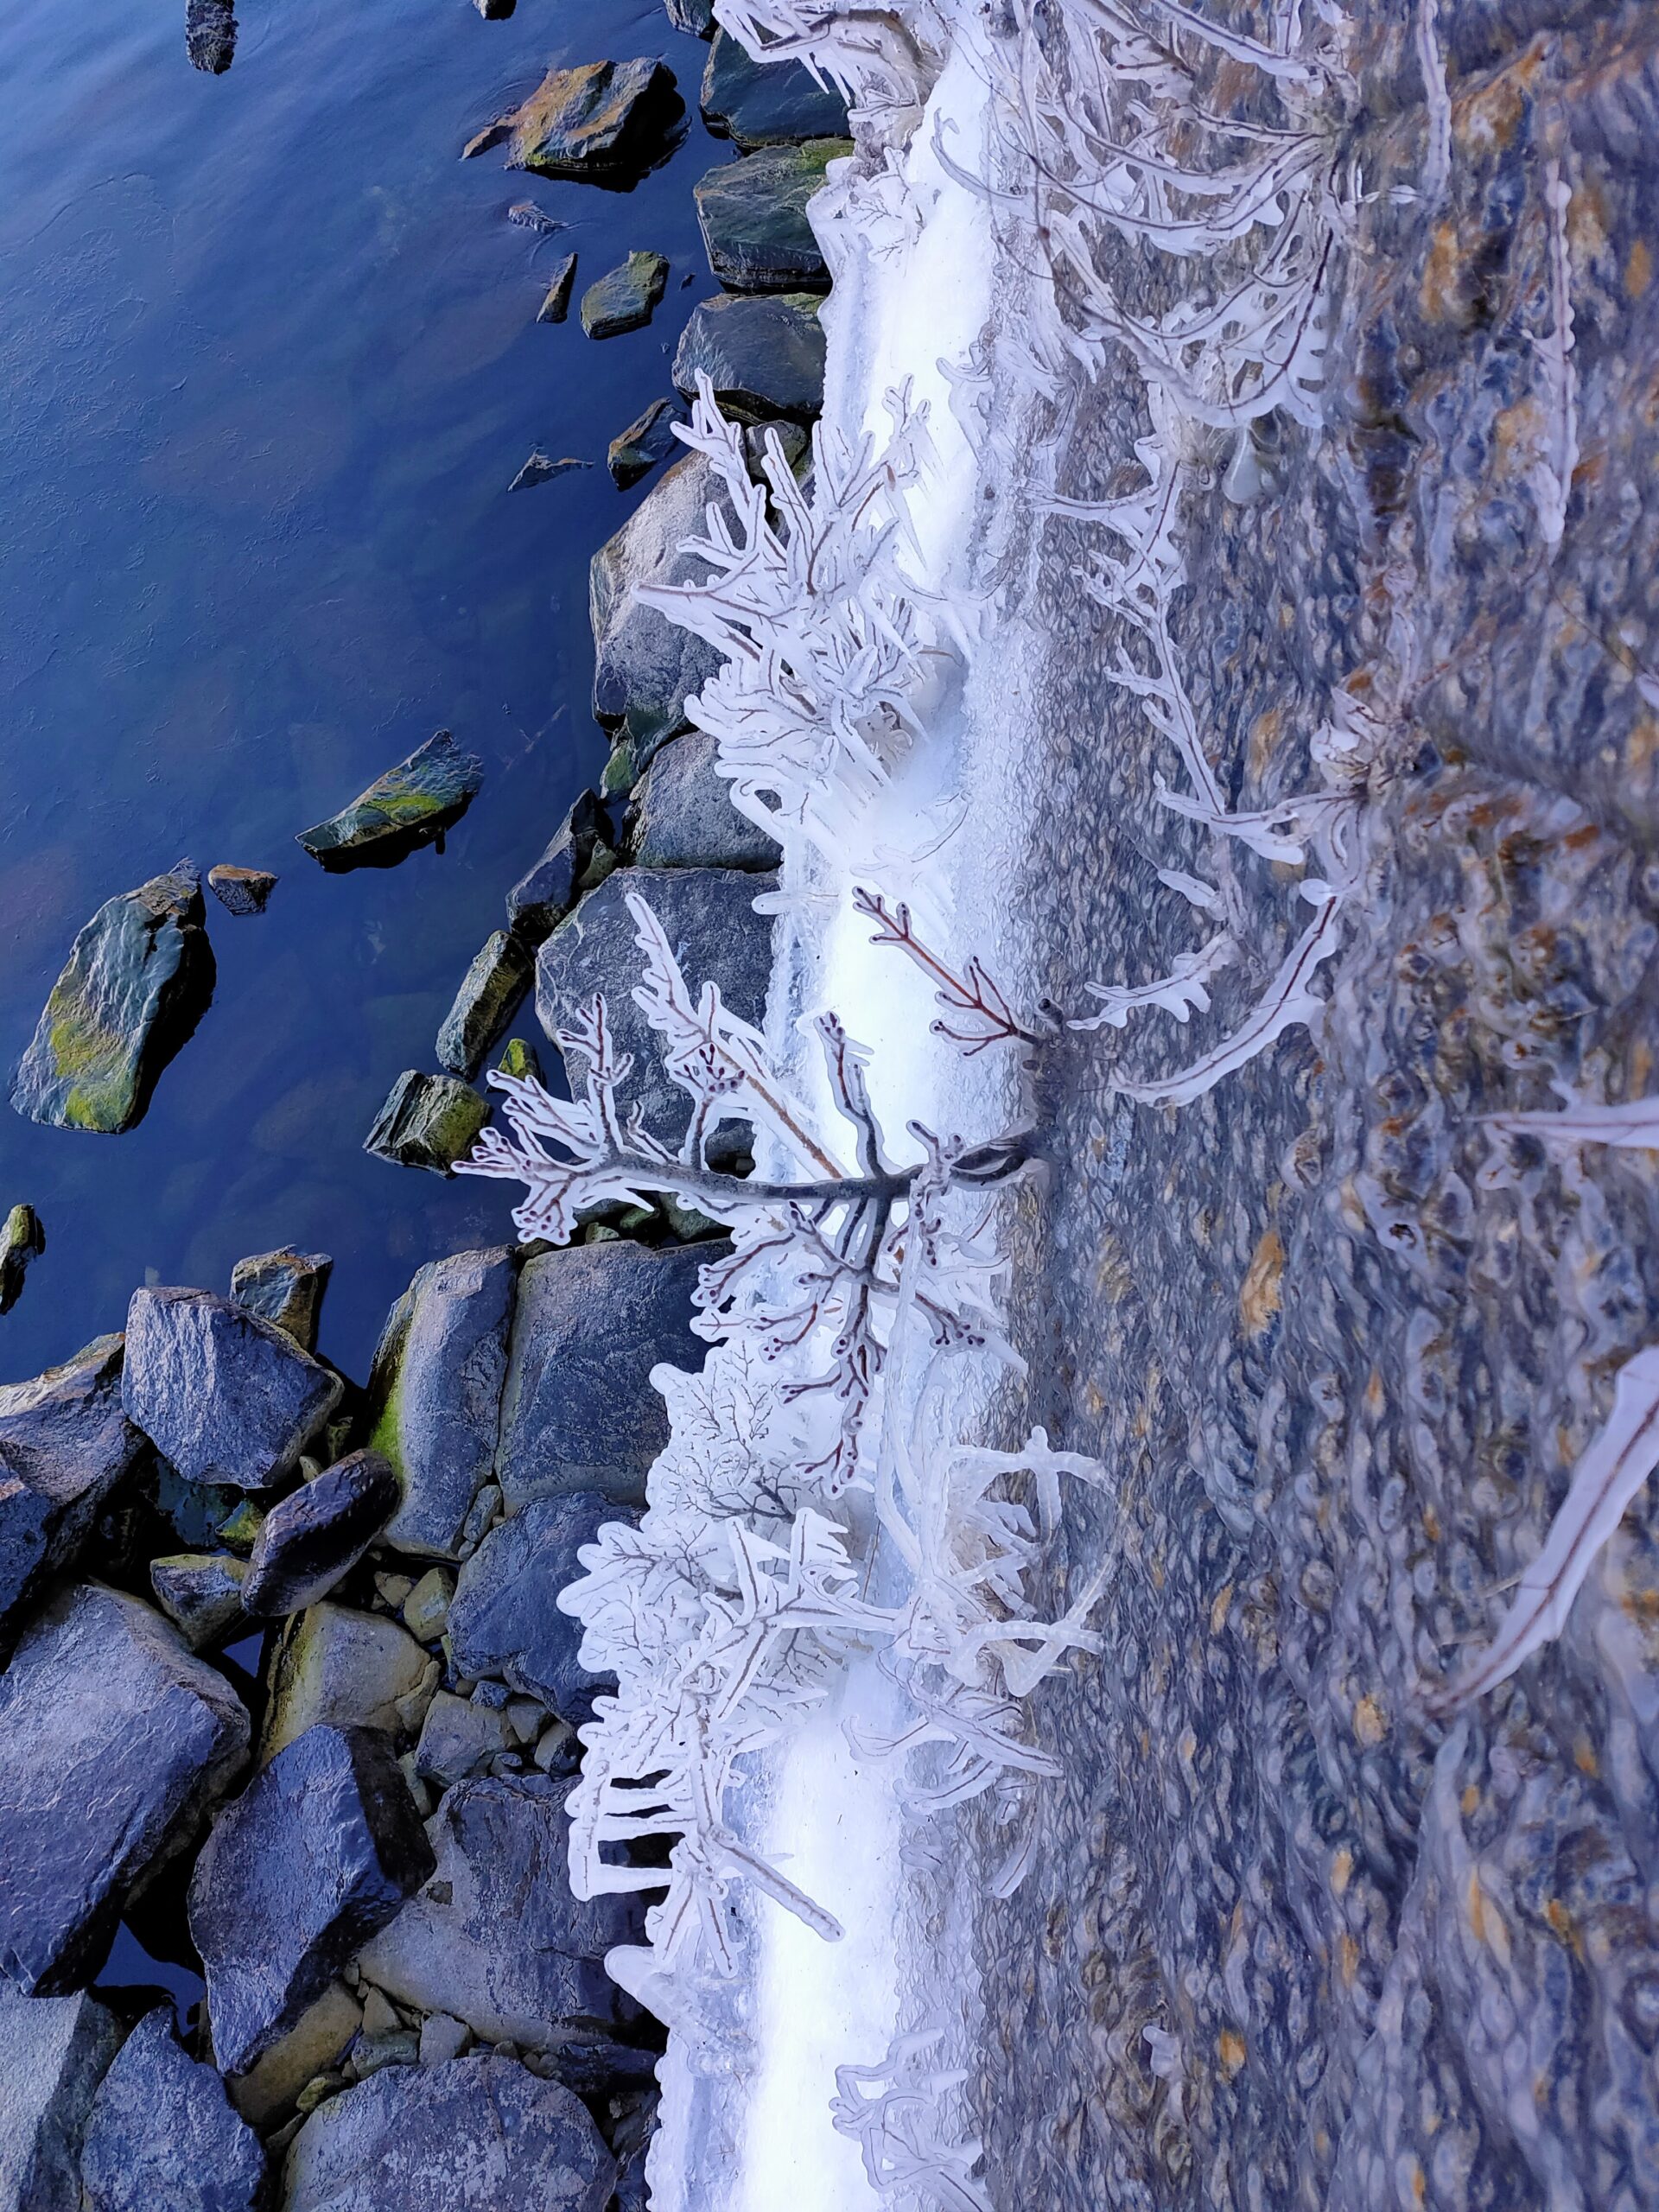 中禅寺湖のしぶき氷の様子は 日光自然博物館 2